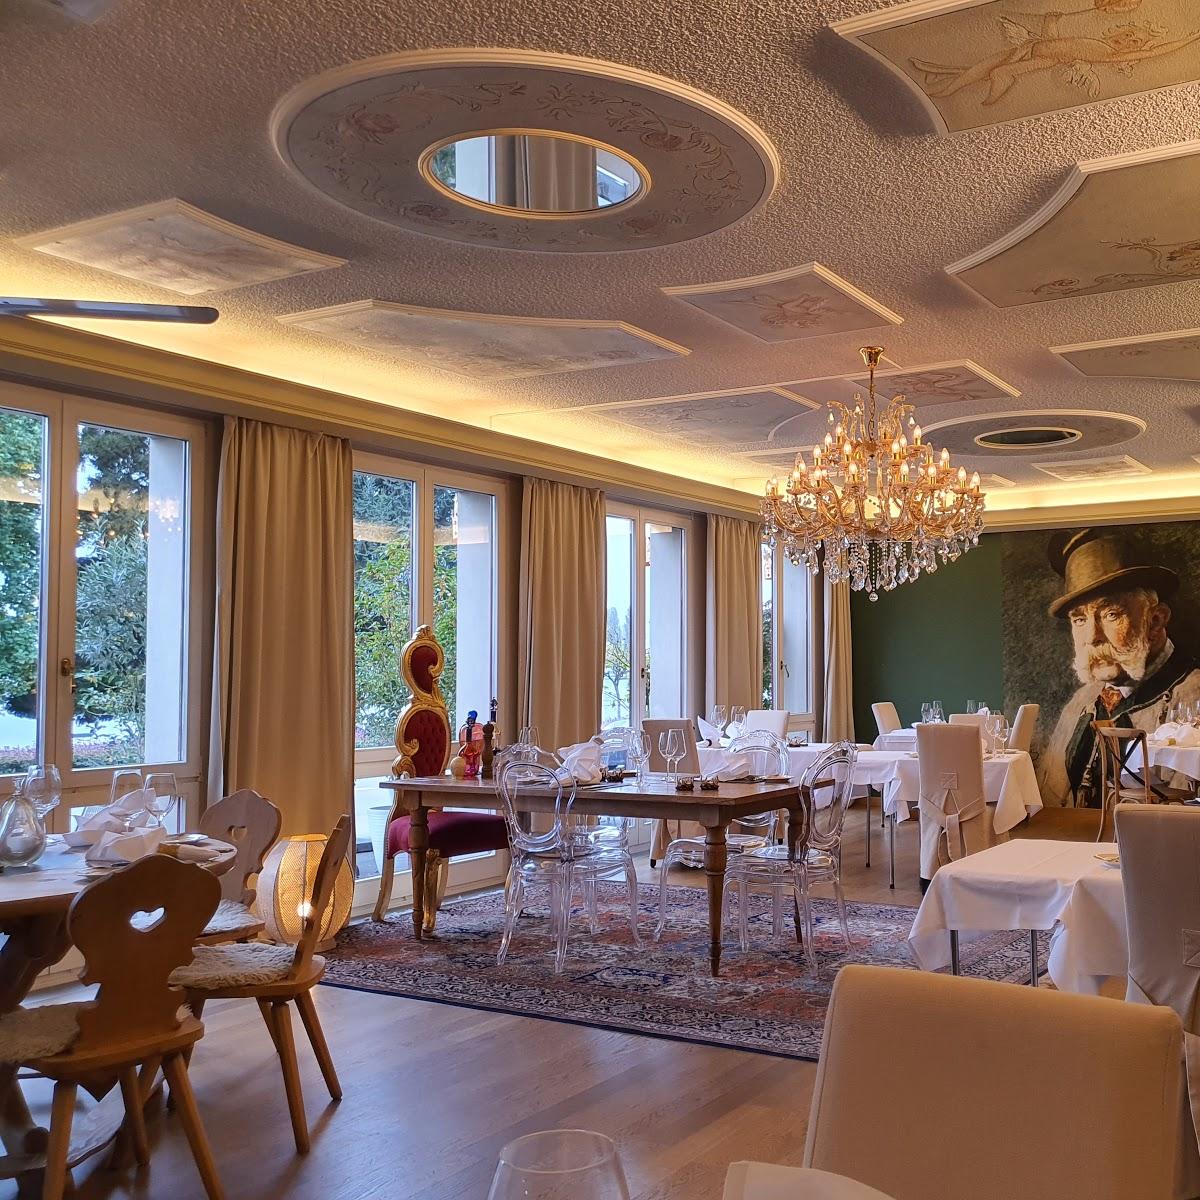 Restaurant "Zum Kaiser Franz" in Zug